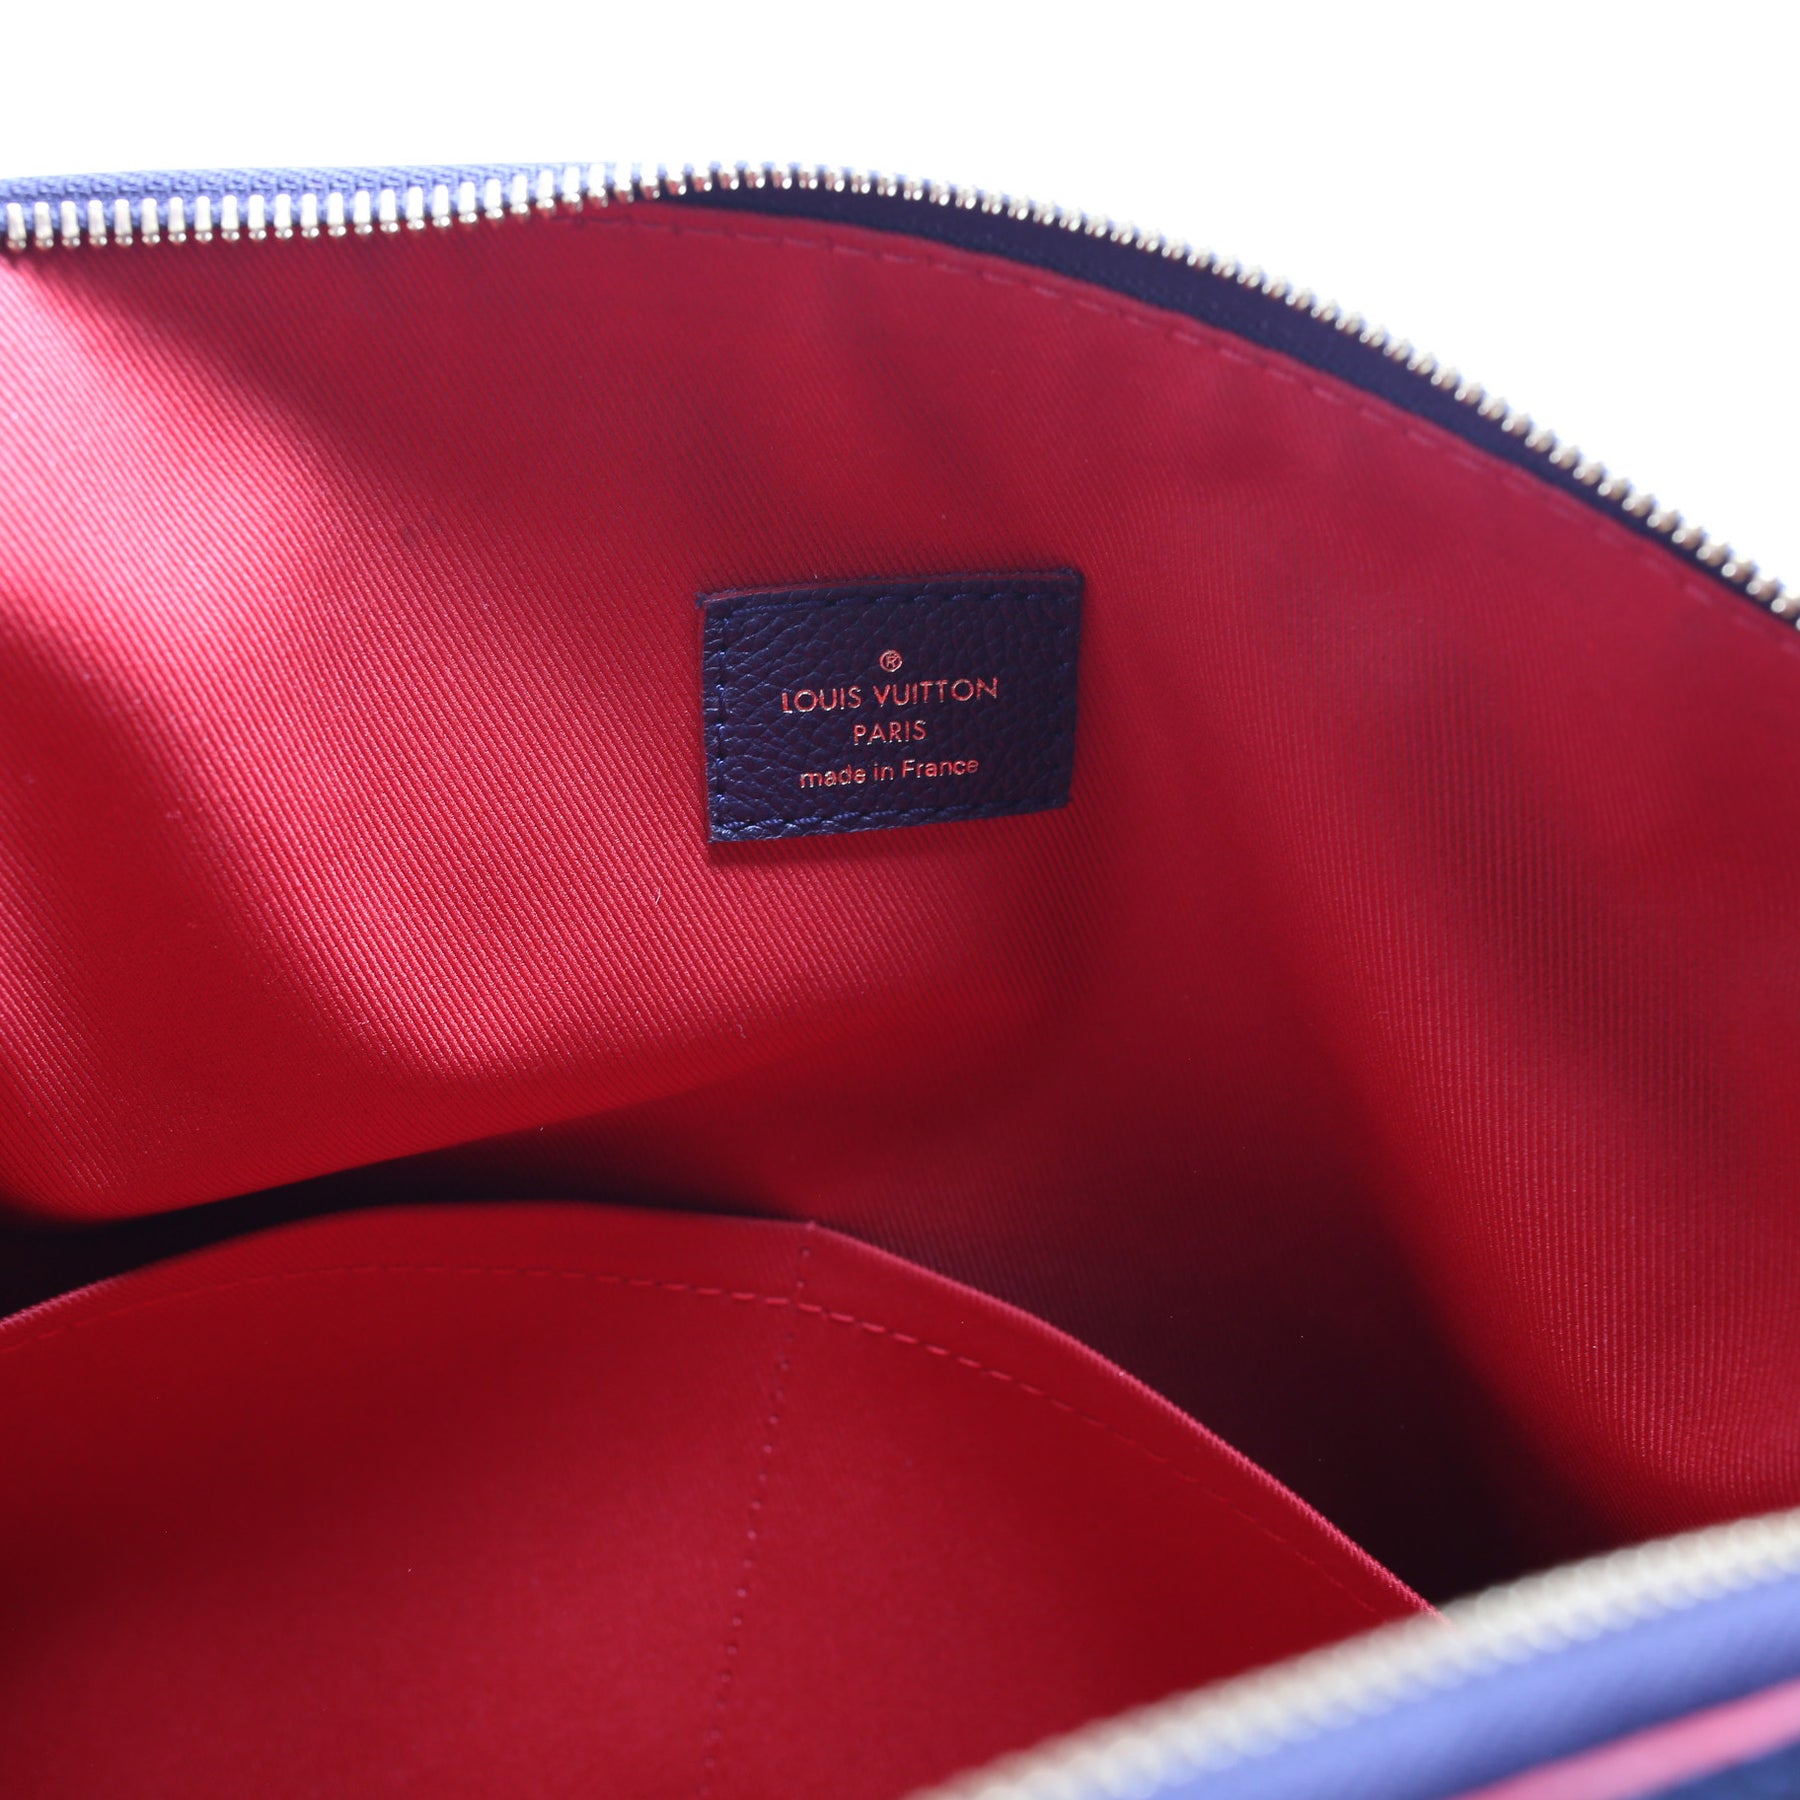 Ponthieu PM Empreinte (PL4) – Keeks Designer Handbags